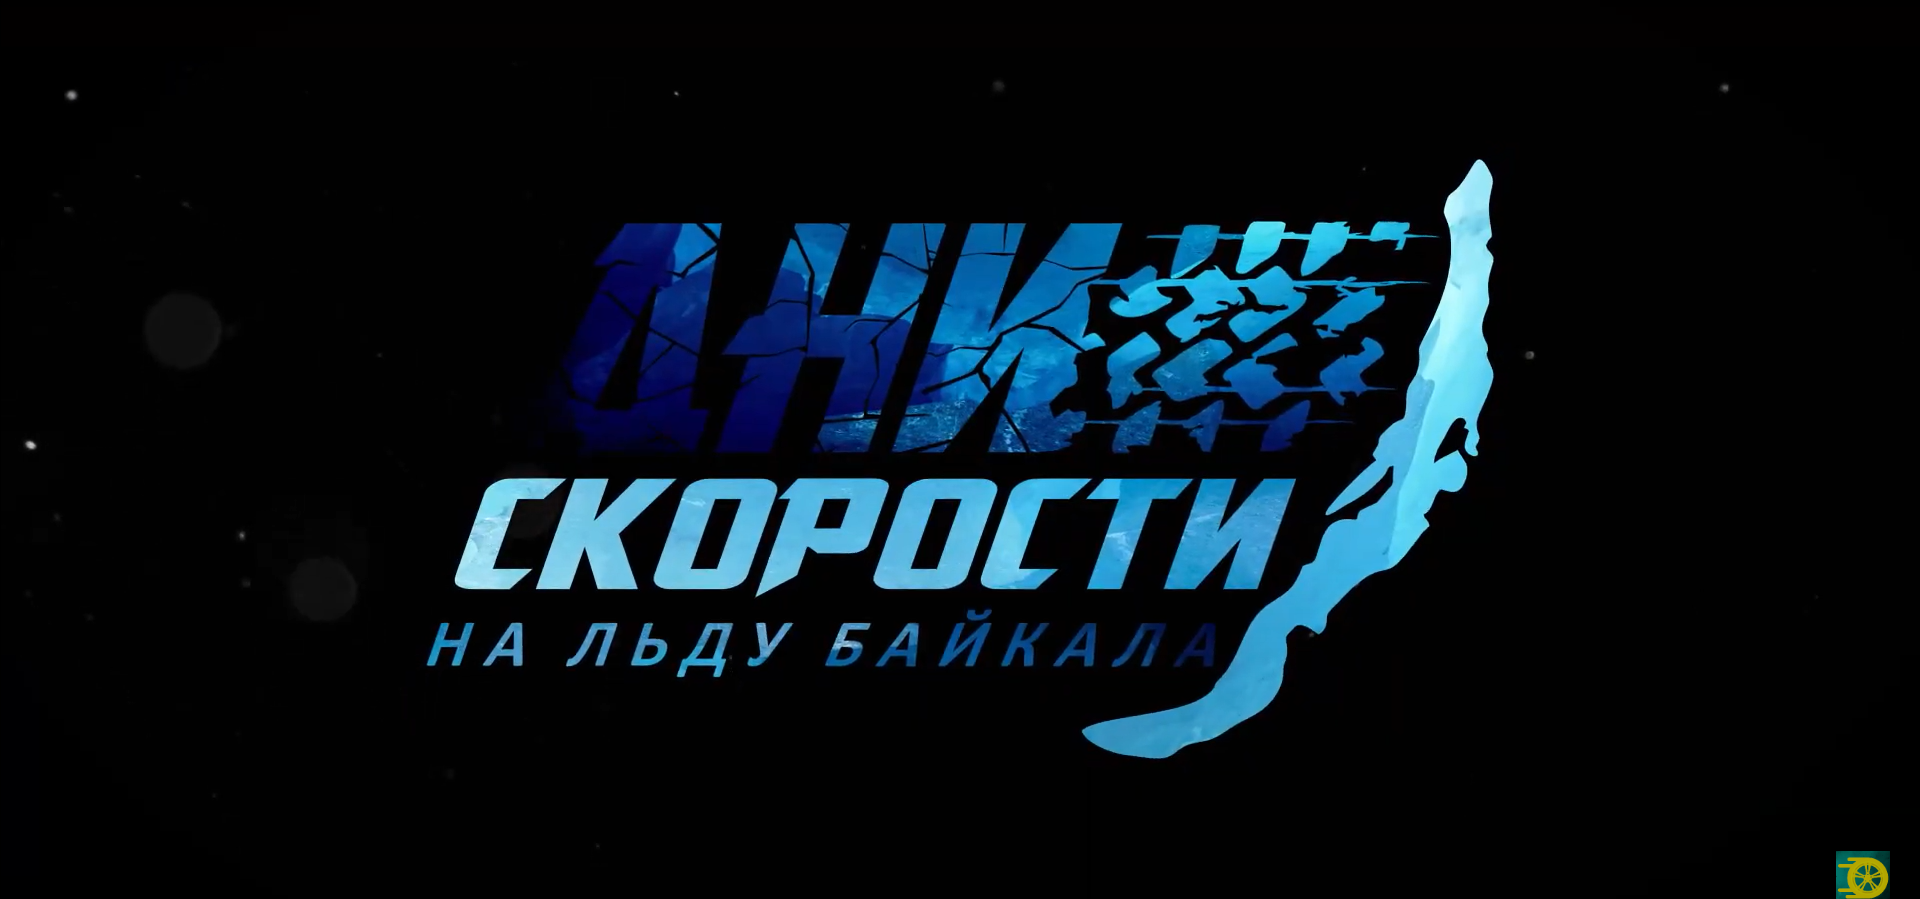 Фестиваль "Дни скорости на льду Байкала 2023"